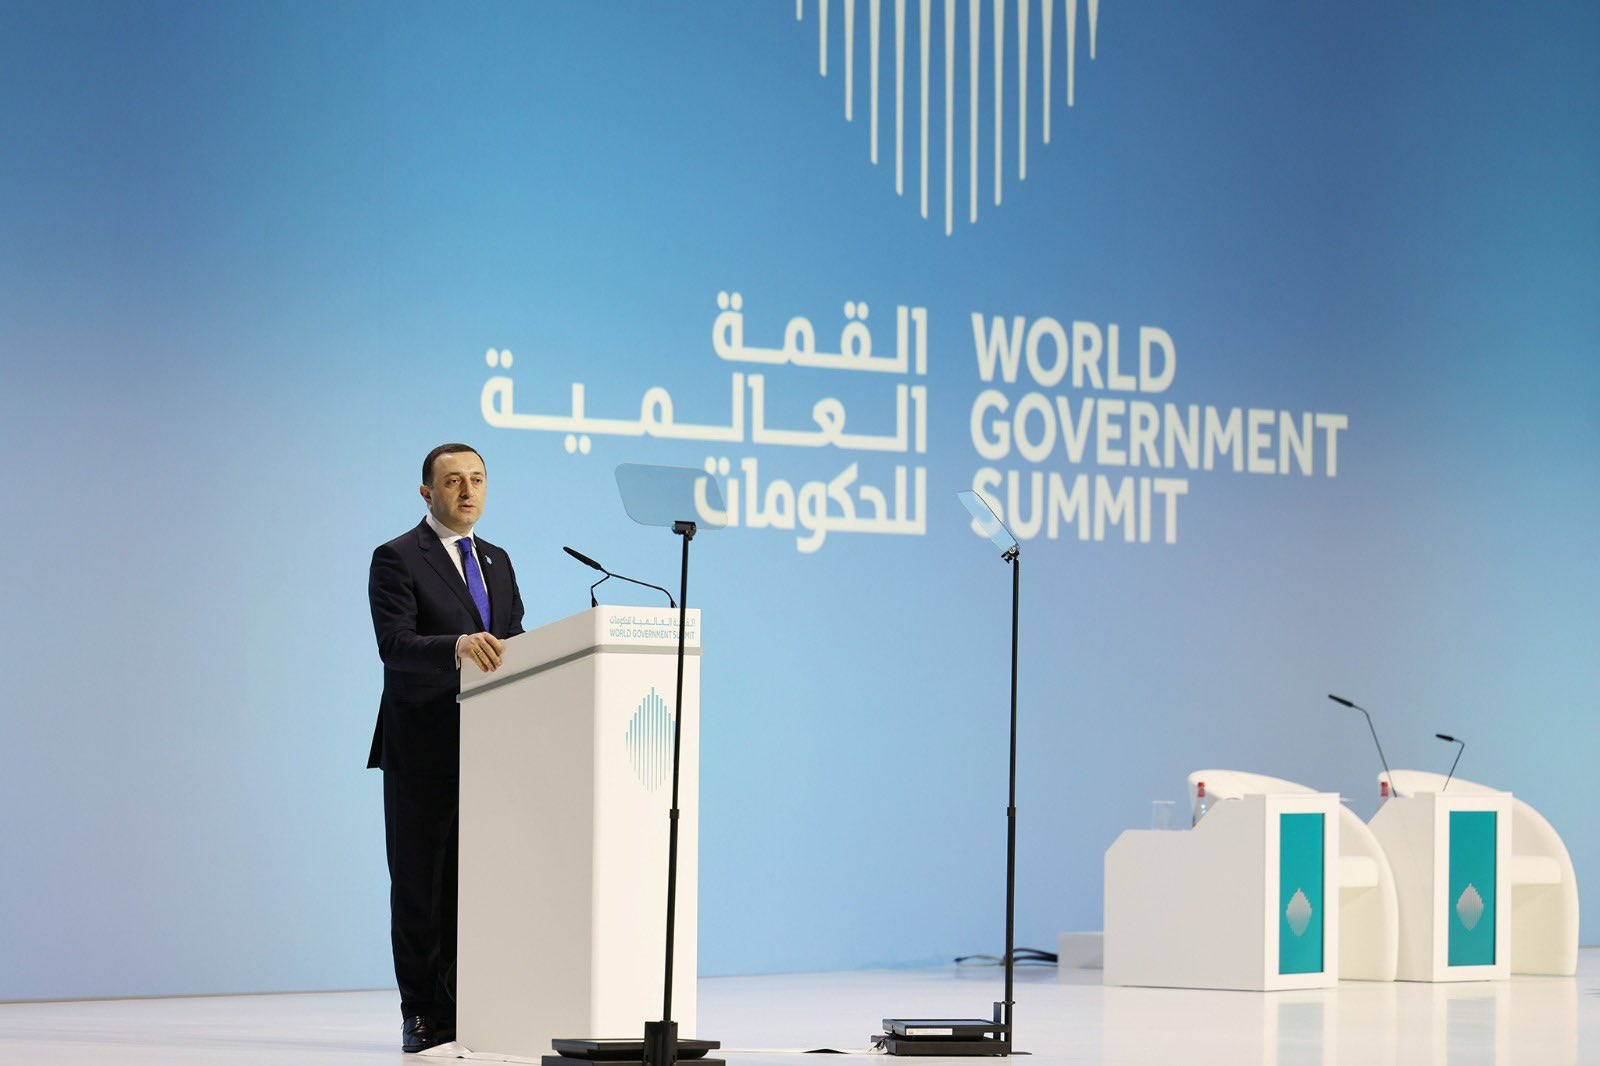 Правительство Грузии. World government Summit. Всемирном правительственном саммите в Дубае. World government Summit Dubai location.